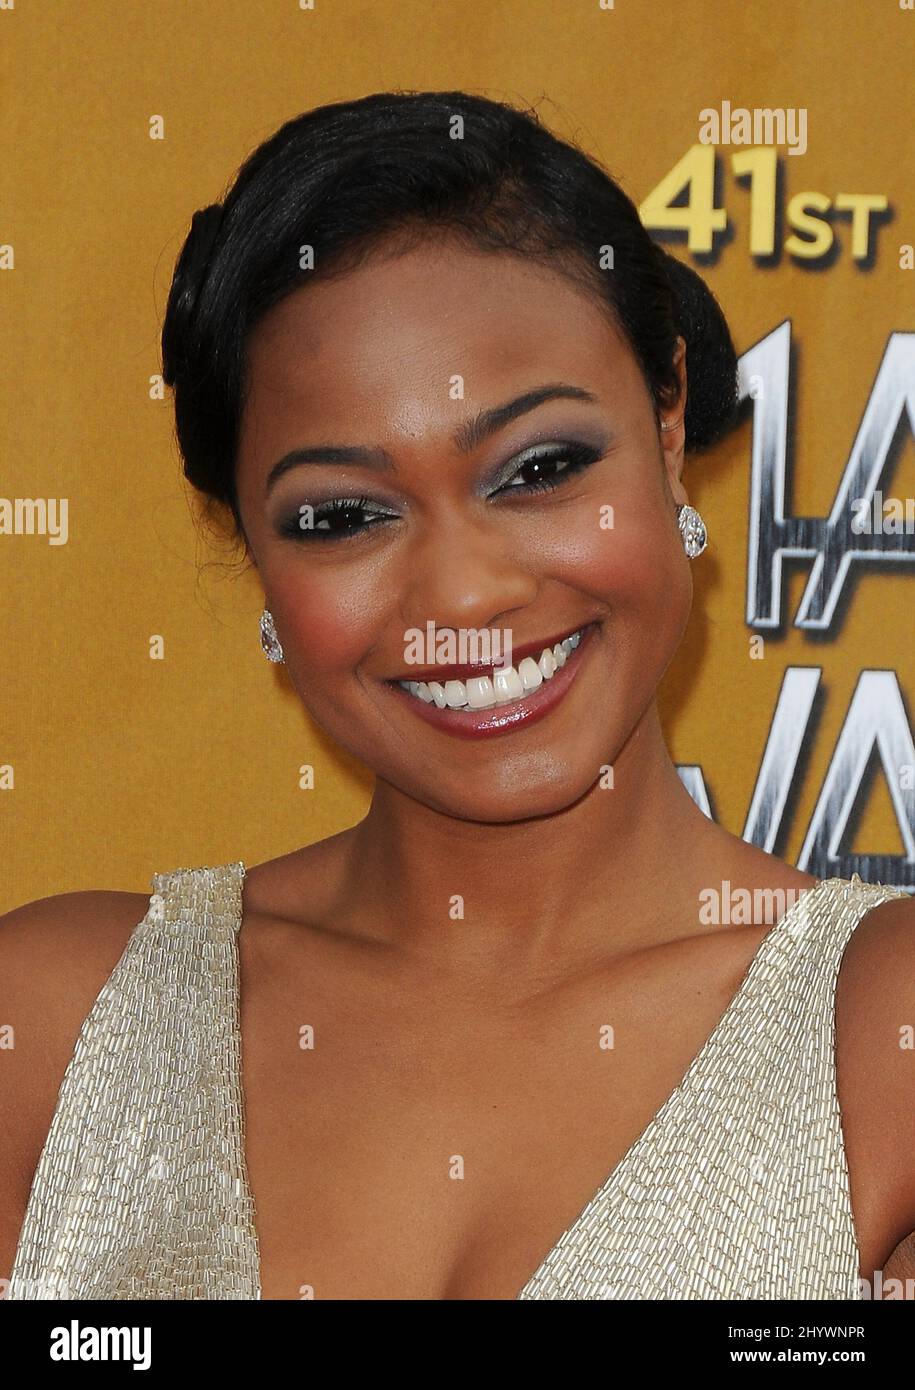 Tatyana Ali arriva per i 41st NAACP Image Awards che si tengono presso il Shrine Auditorium di Los Angeles, California, USA. Foto Stock